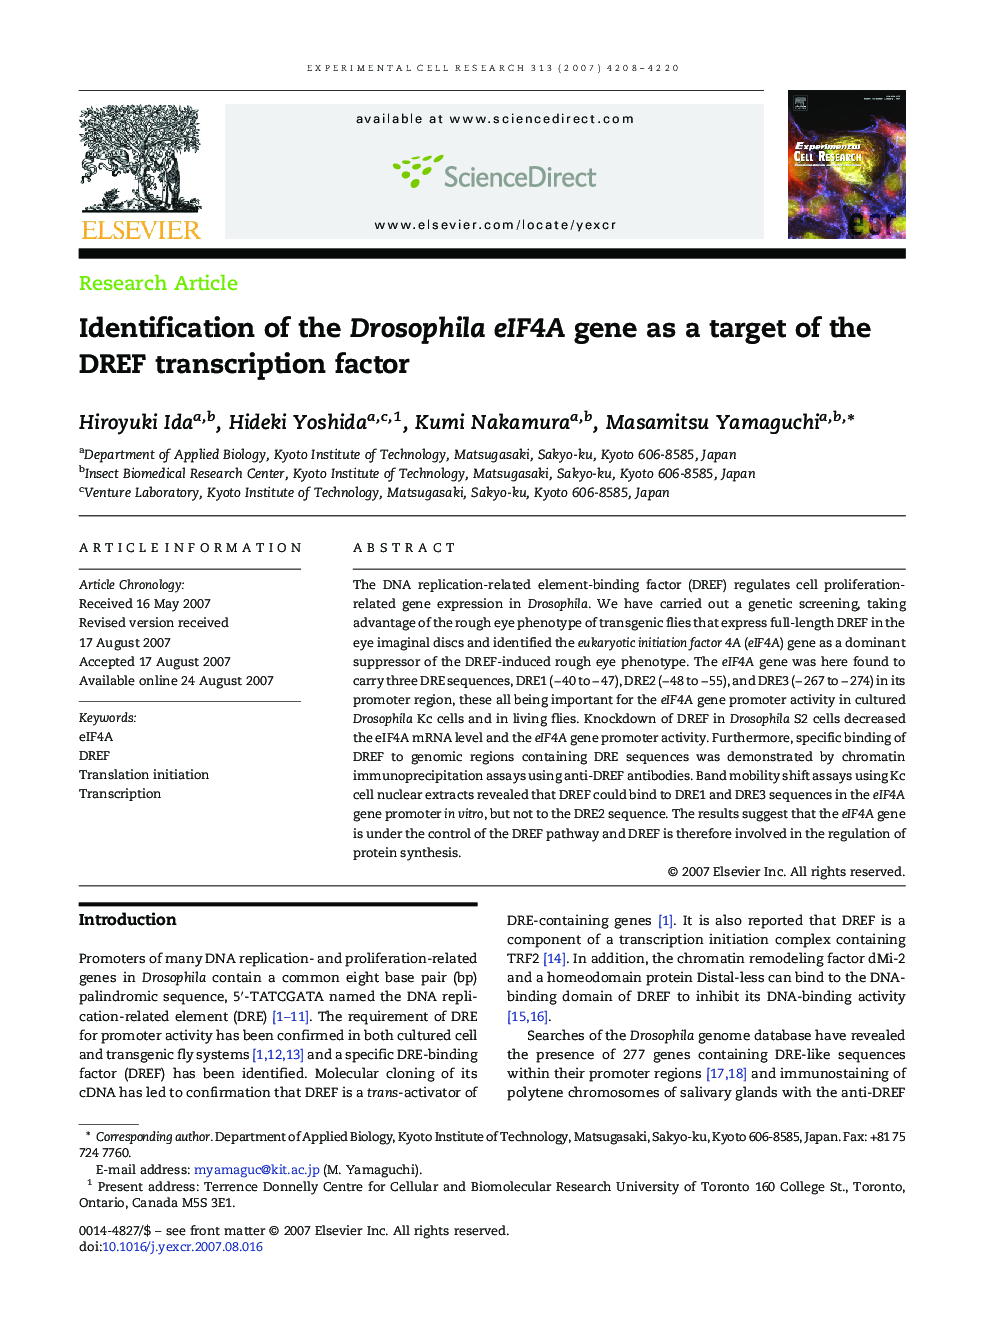 Identification of the Drosophila eIF4A gene as a target of the DREF transcription factor